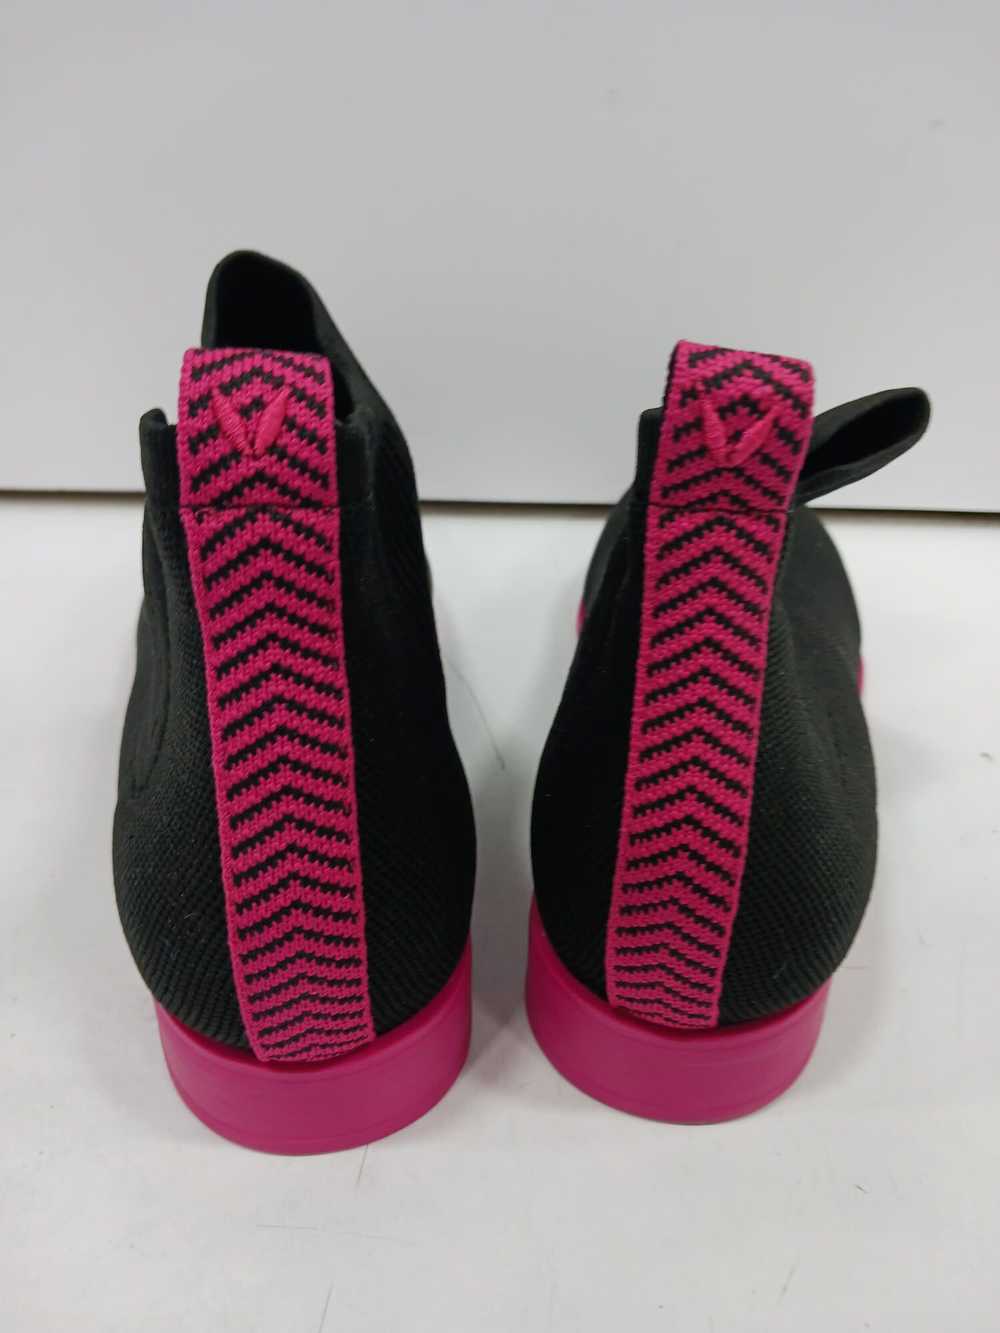 Vivaia Women's Black & Pink Size 10 Shoes - image 2